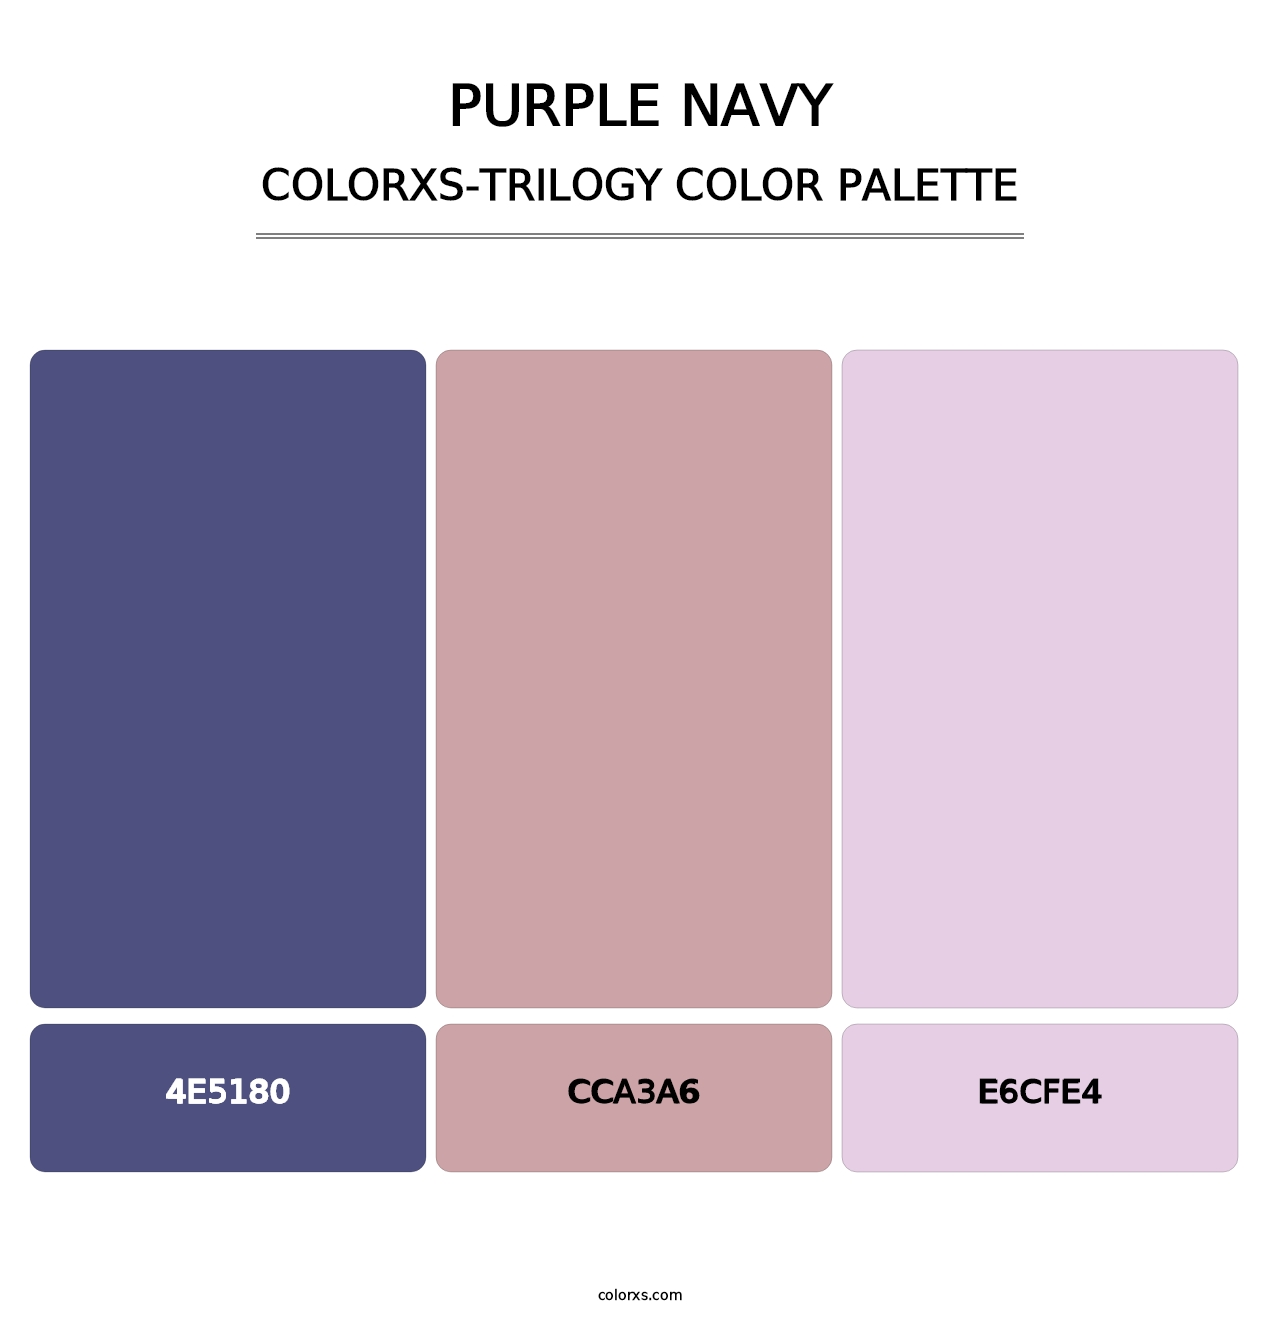 Purple Navy - Colorxs Trilogy Palette